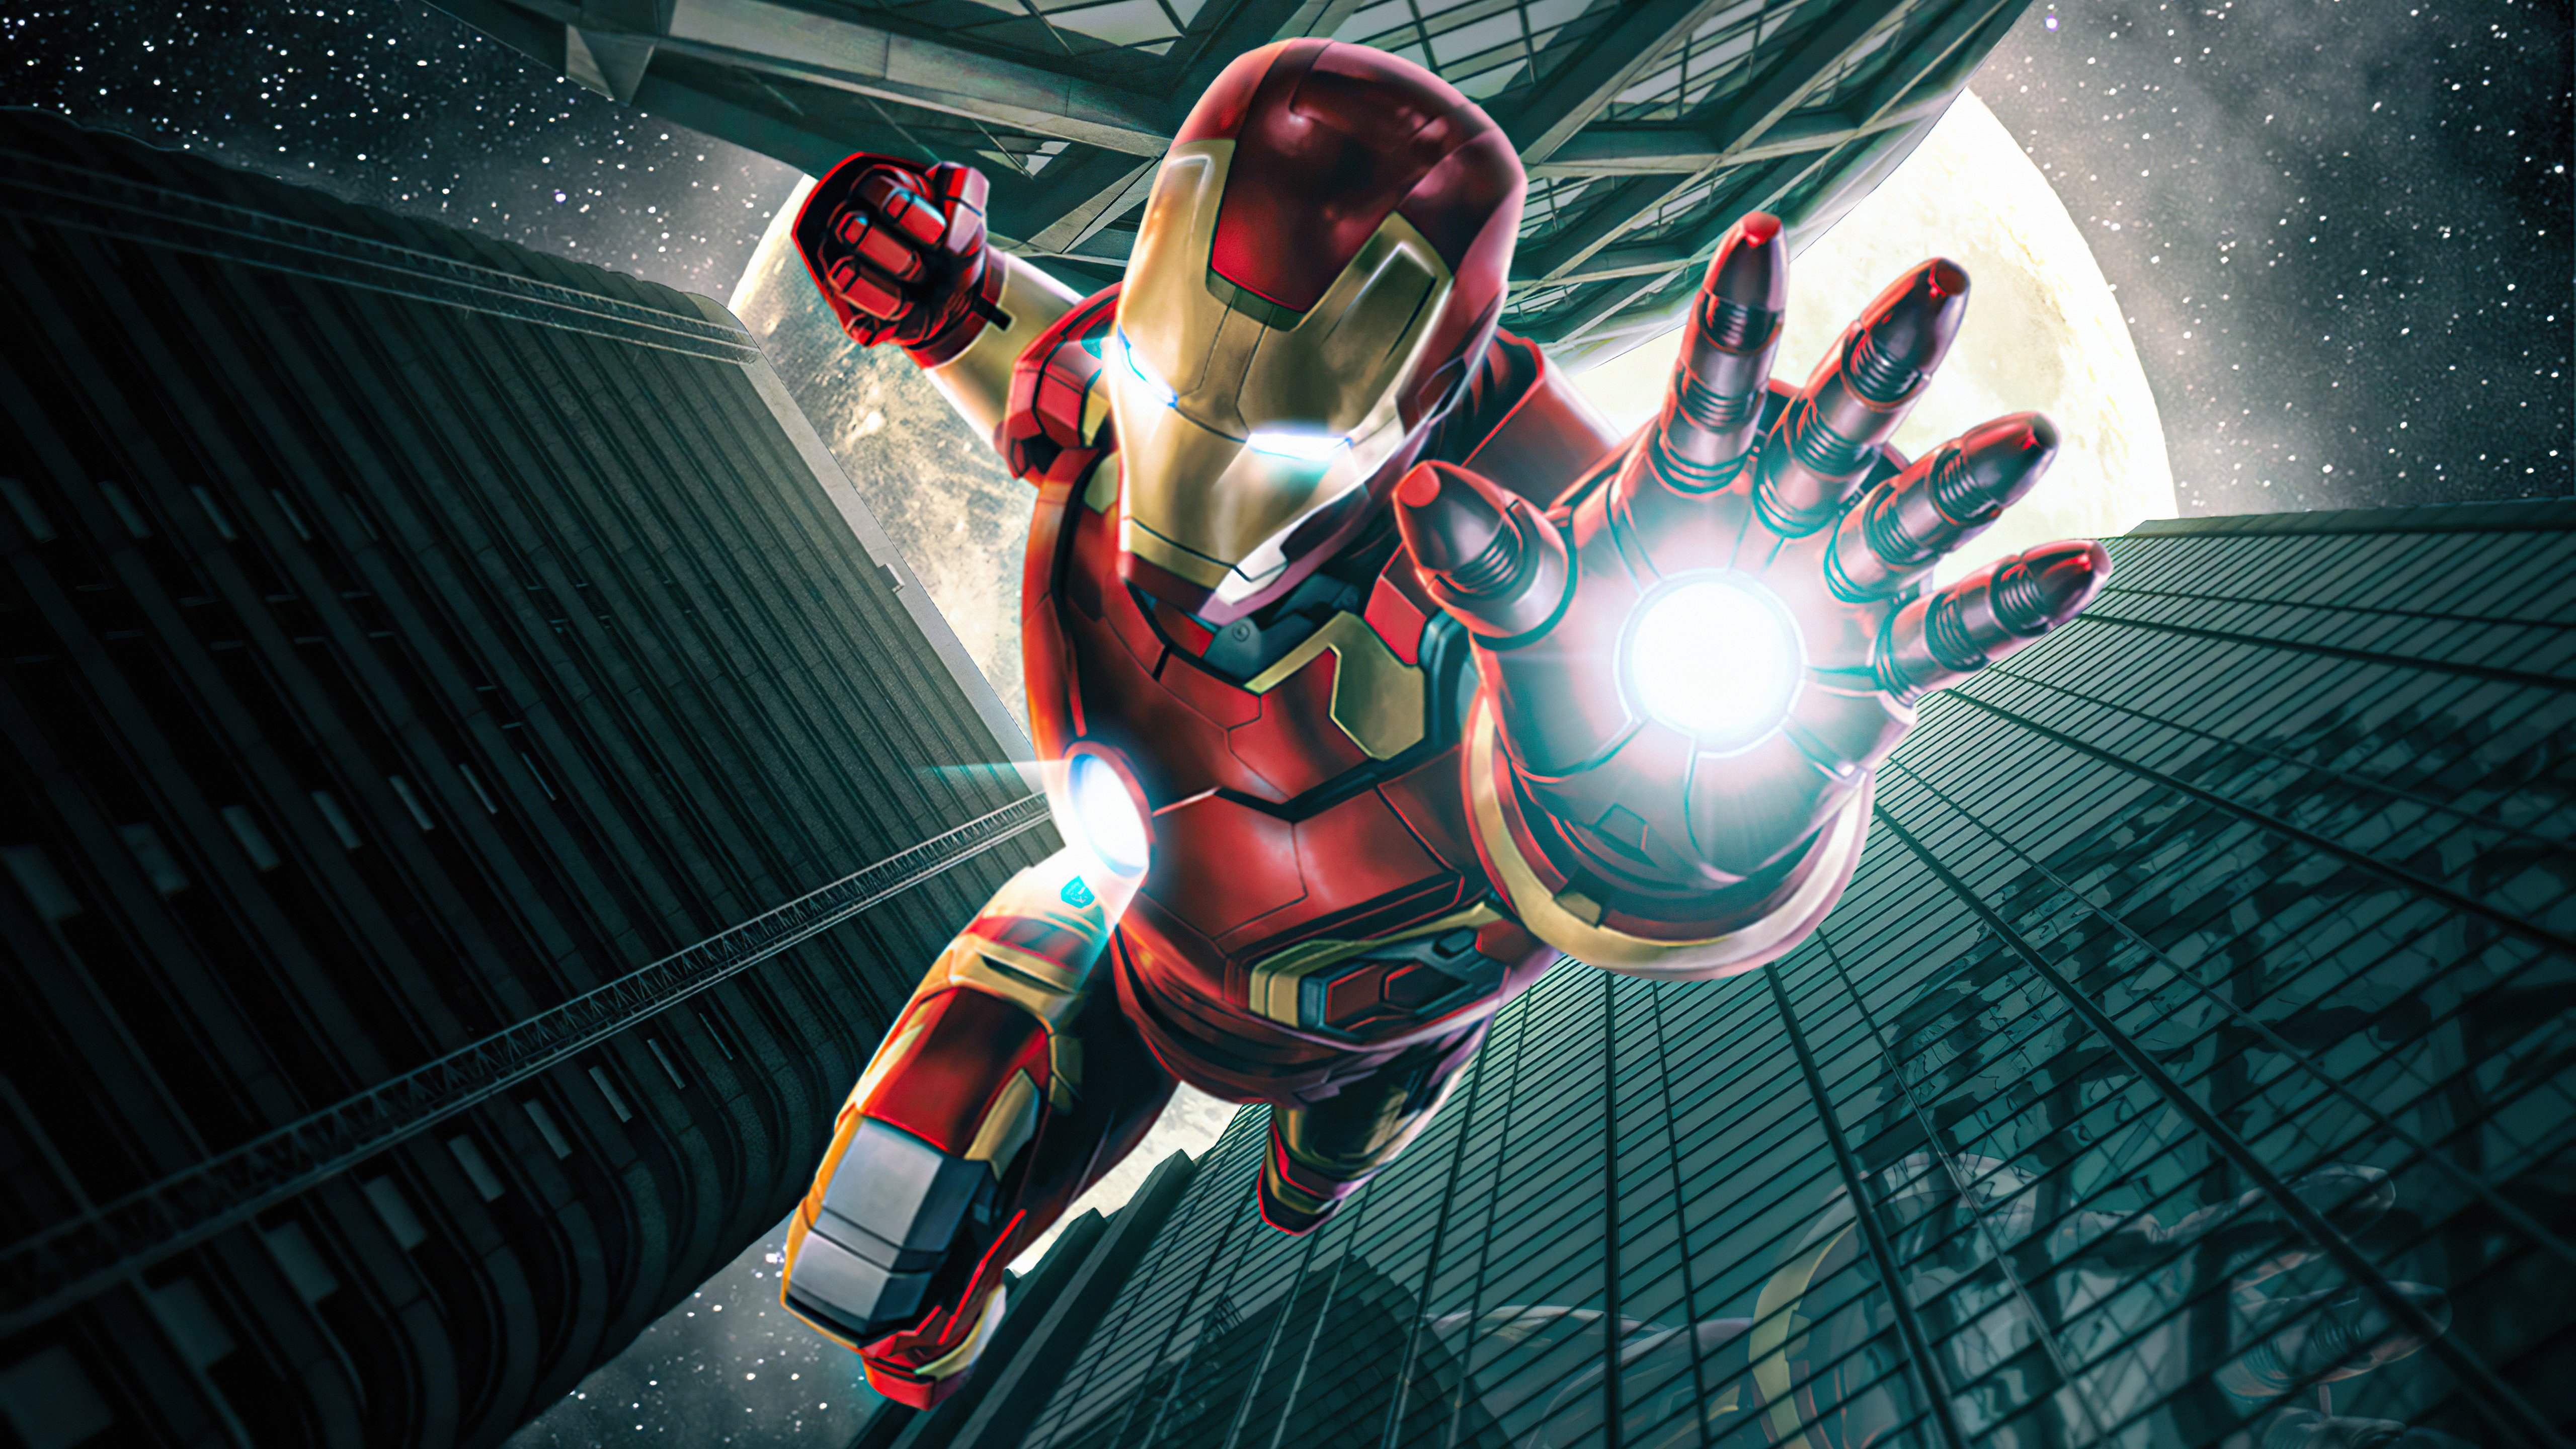 Wallpaper Iron Man falling